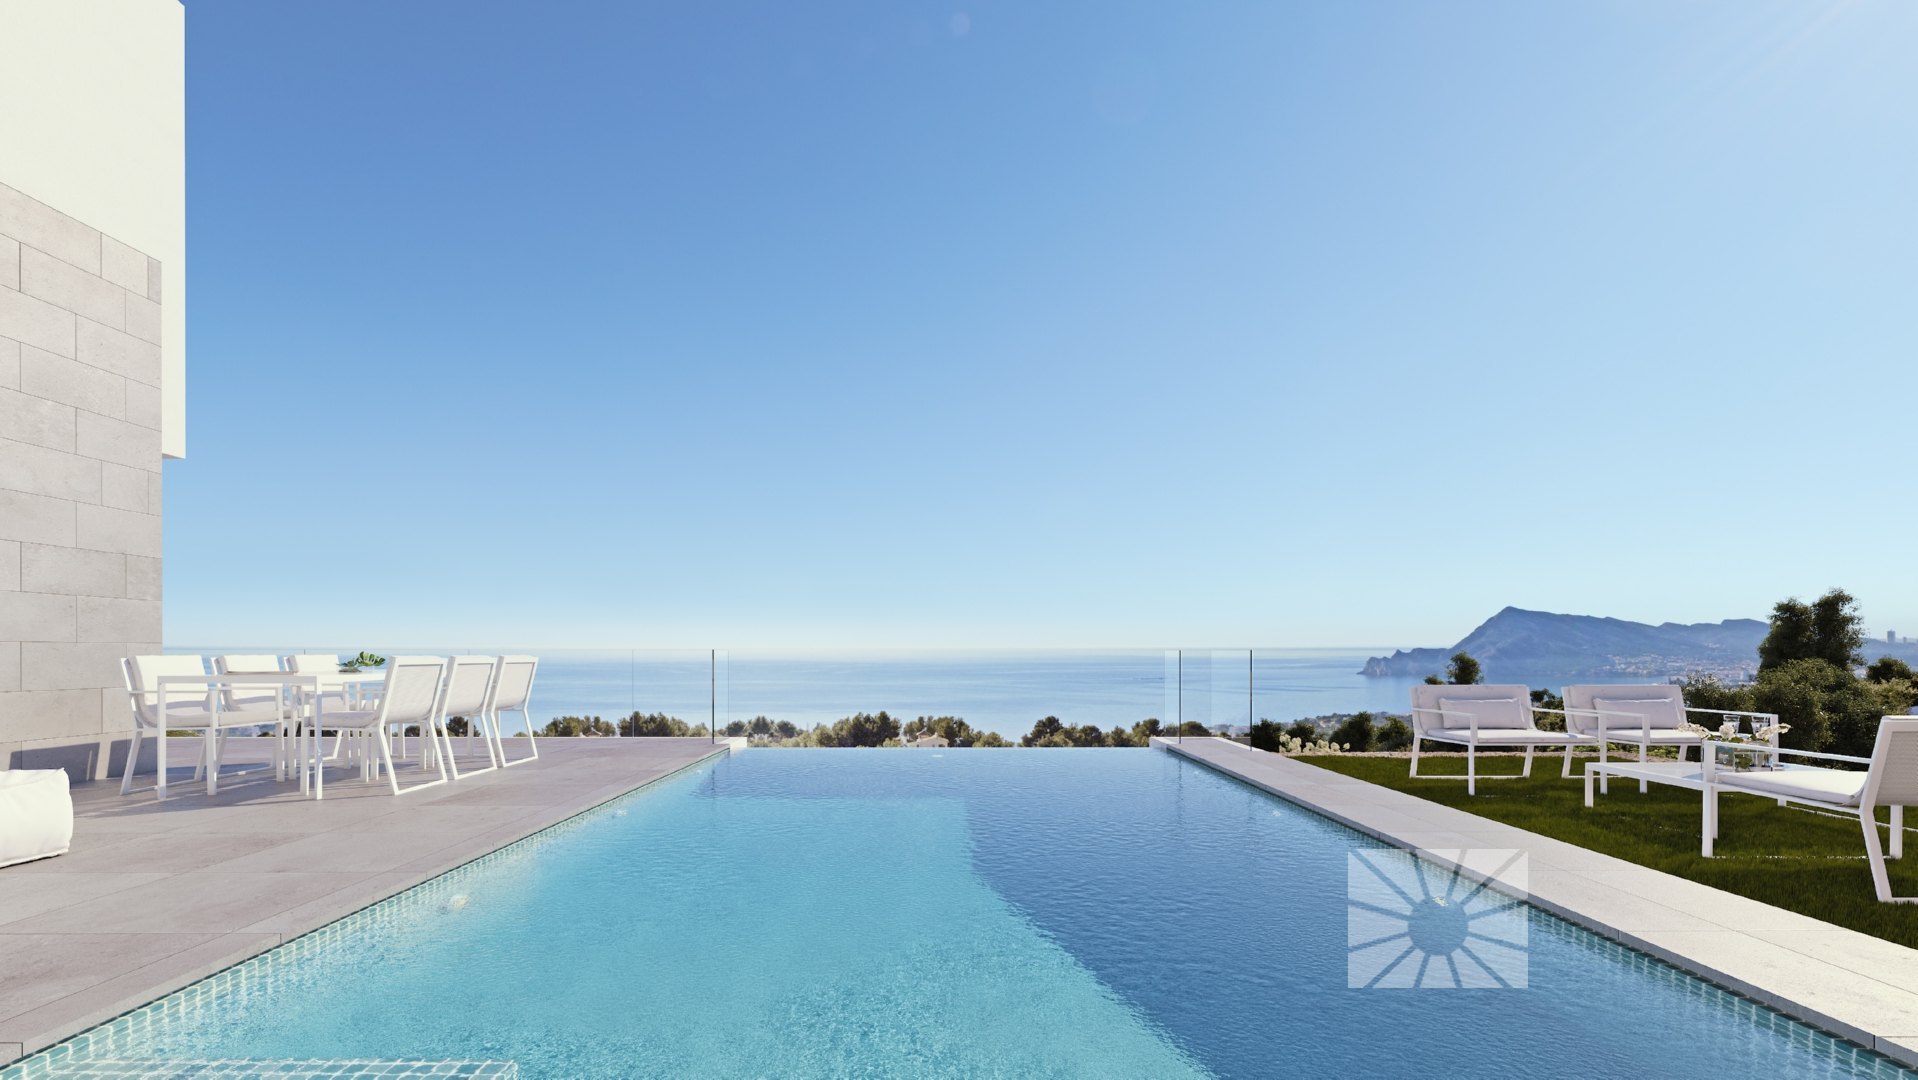 Villa de lujo moderna comenzó a construirse con increíbles vistas al mar